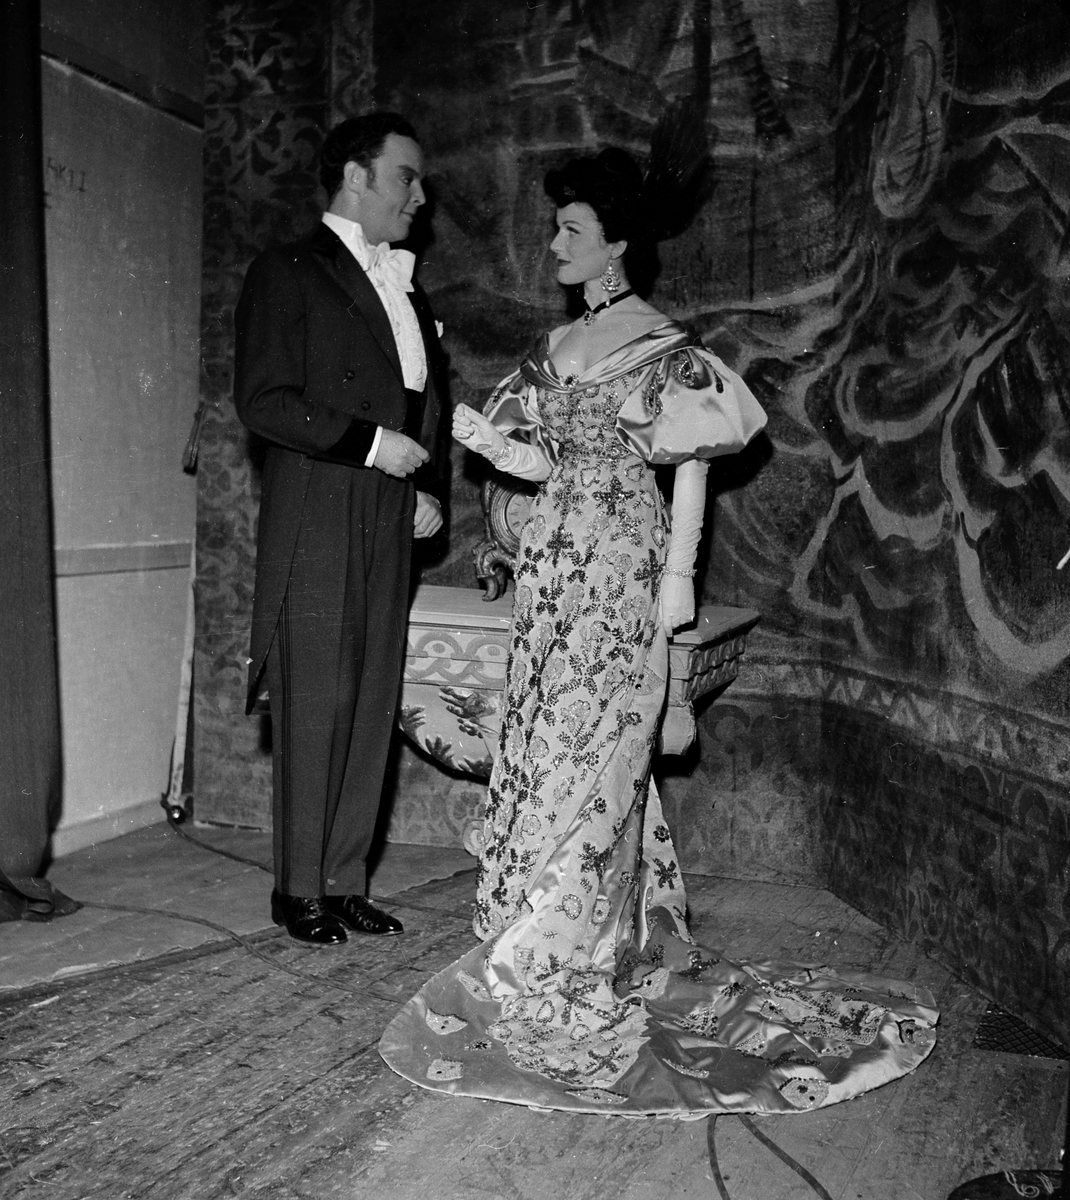 Fra oppsetningen av "Den glade enke". To skuespiller på scenen. Fotografert 28. mai 1955.